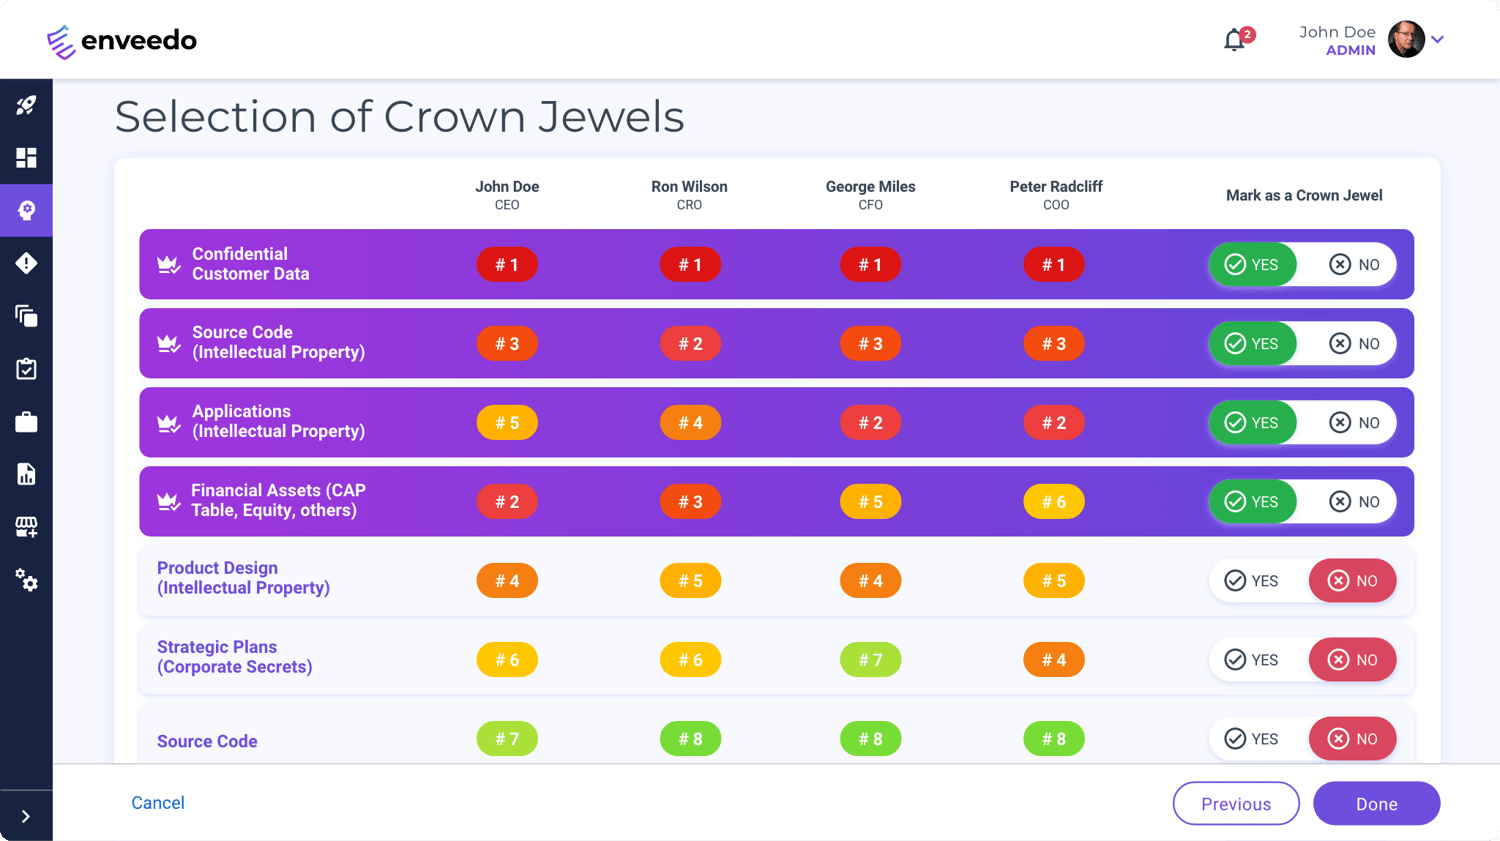 Enveedo's Crown Jewel Analysis helps you understand what matters most